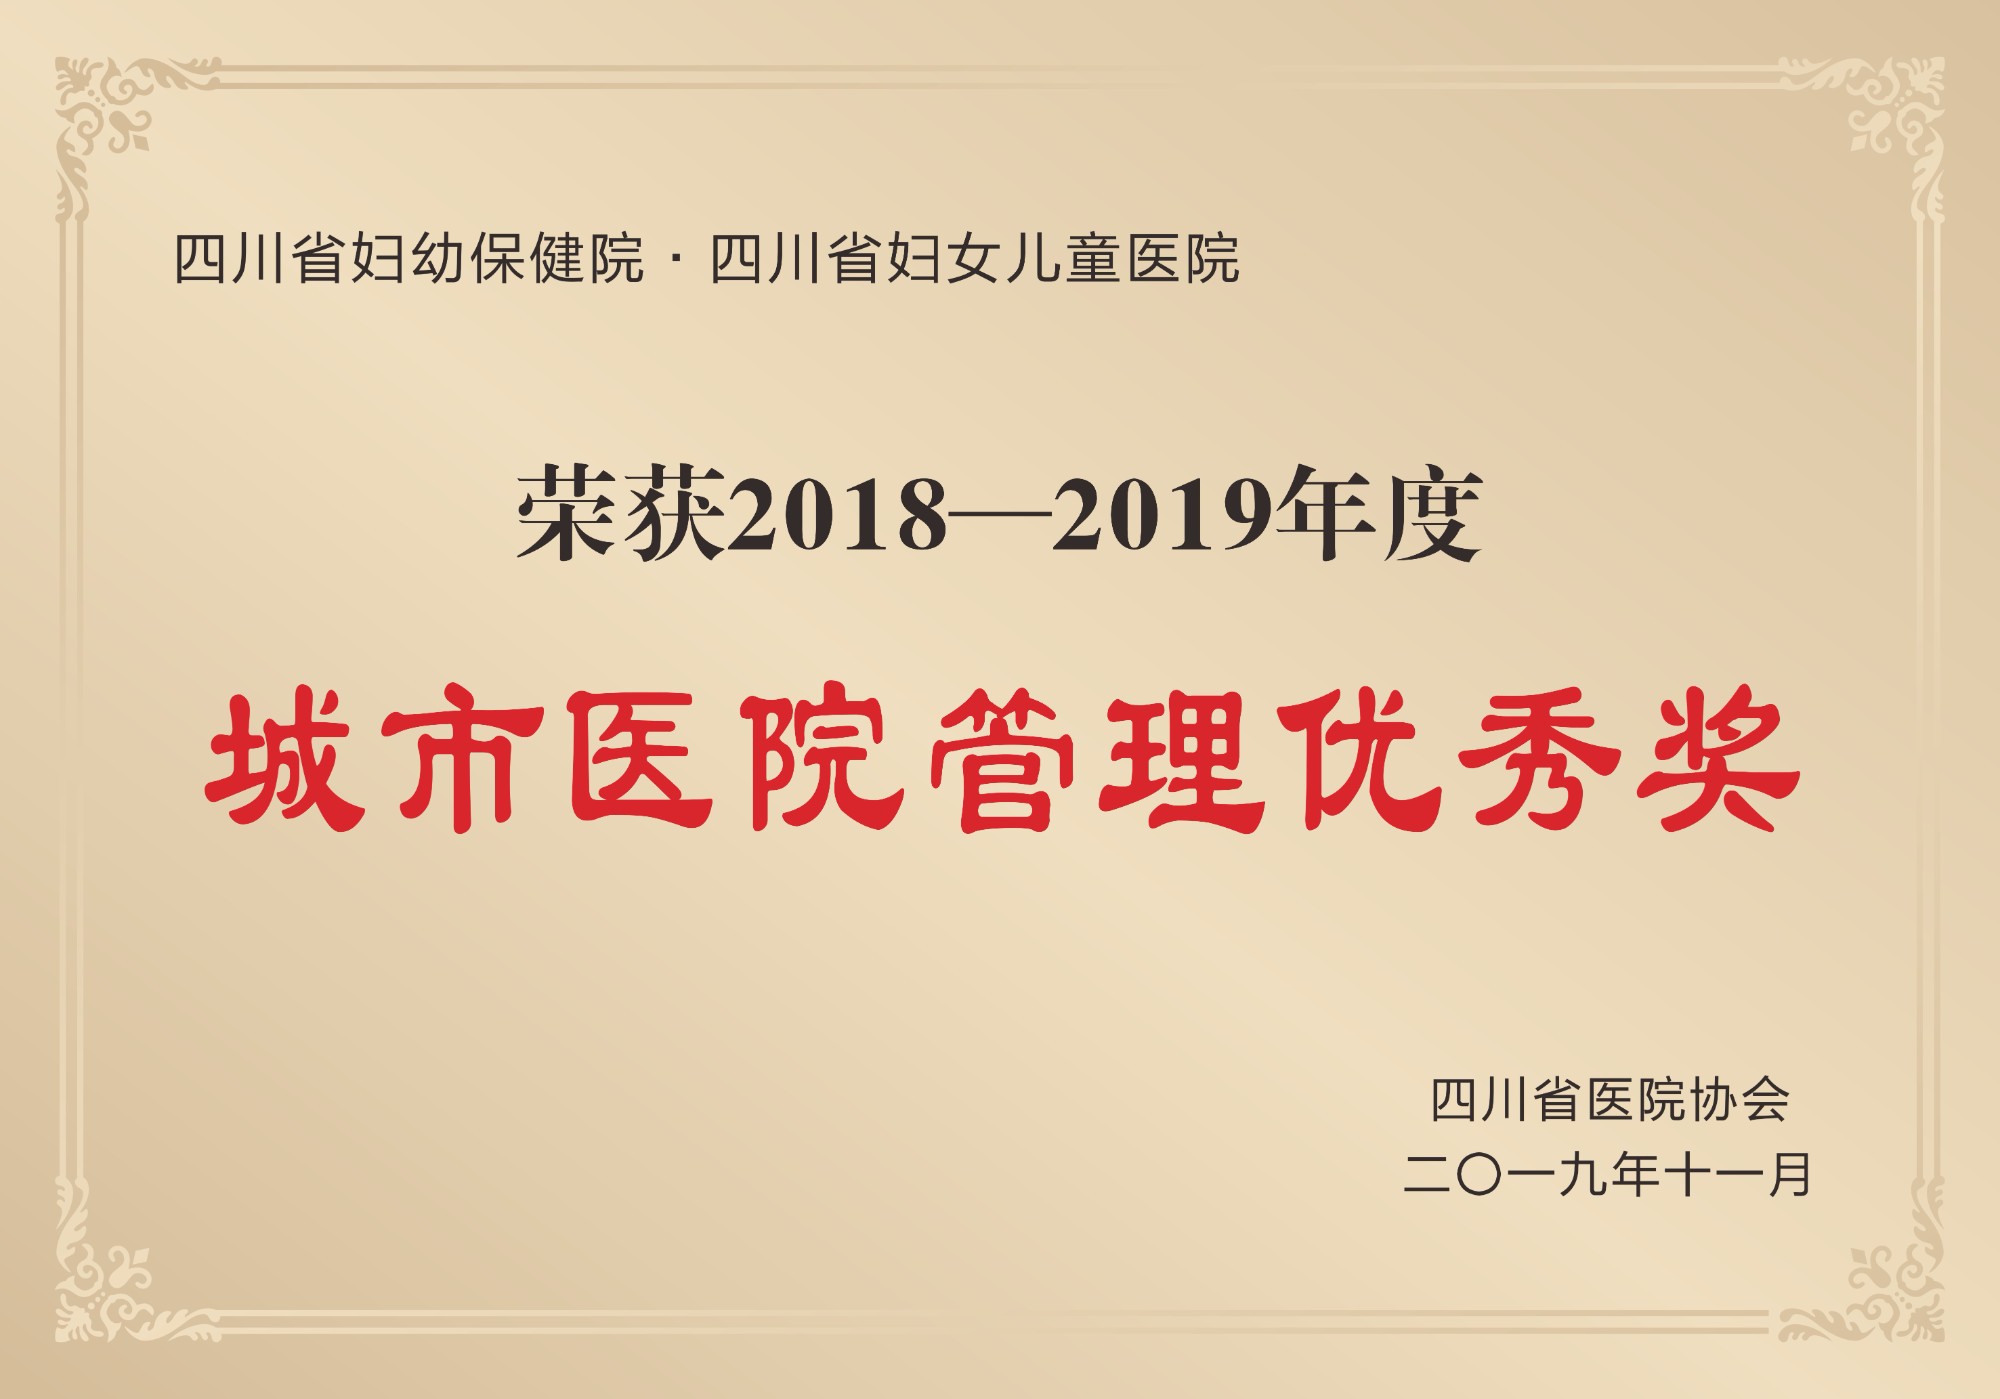 2019年榮獲四川省醫院協會頒發的“2018-2019年度城市醫院管理優秀獎”